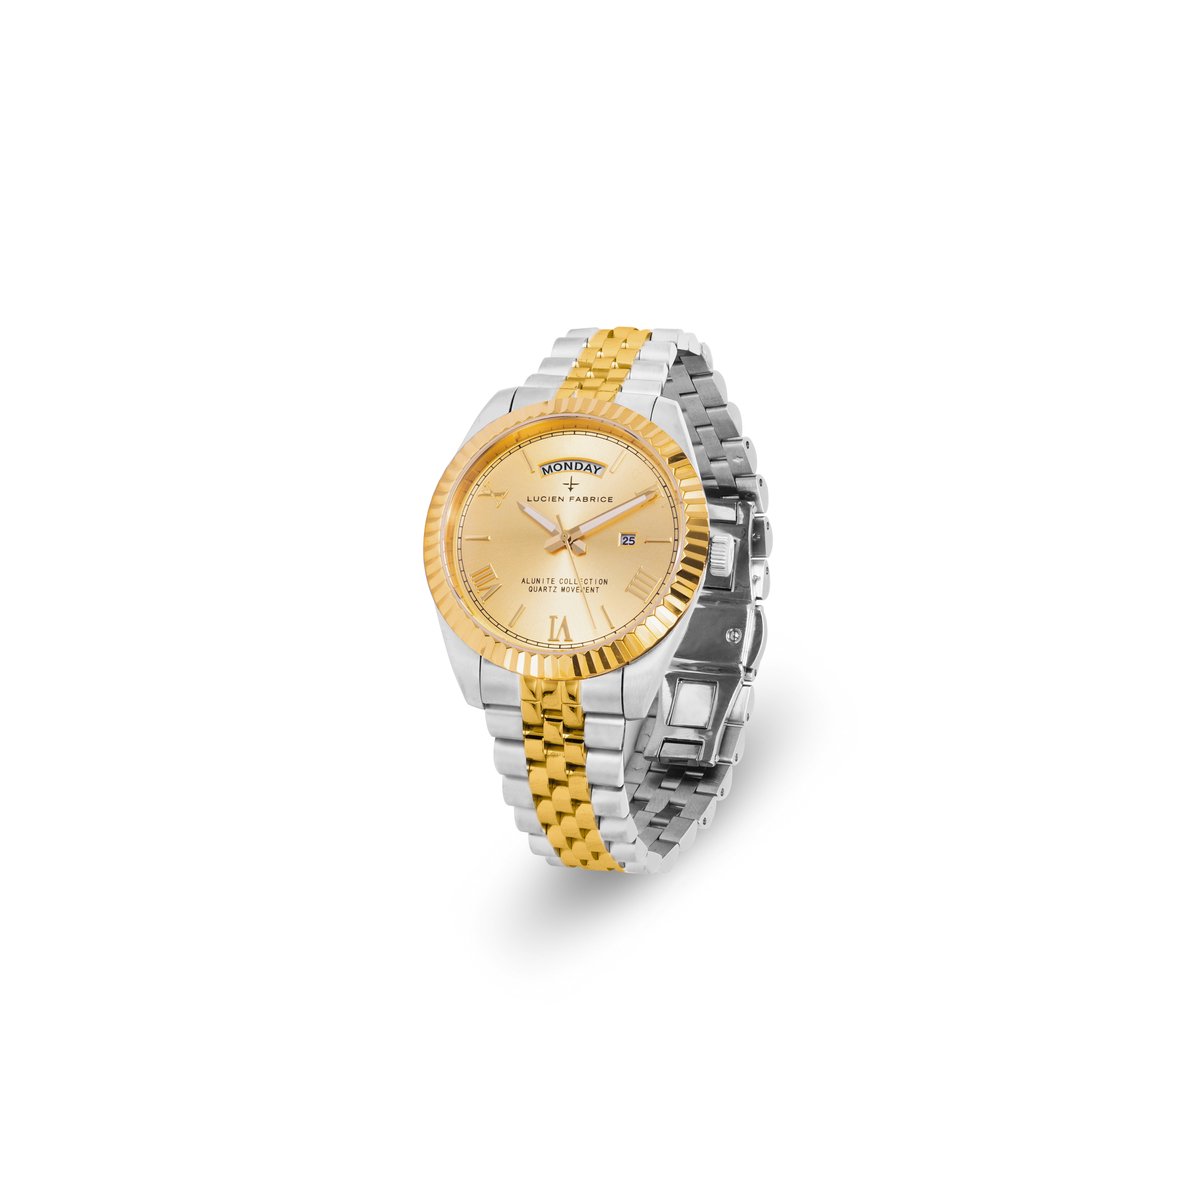 Lucien Fabrice horloge Alunite zilverkleurig-goudkleurig 40mm